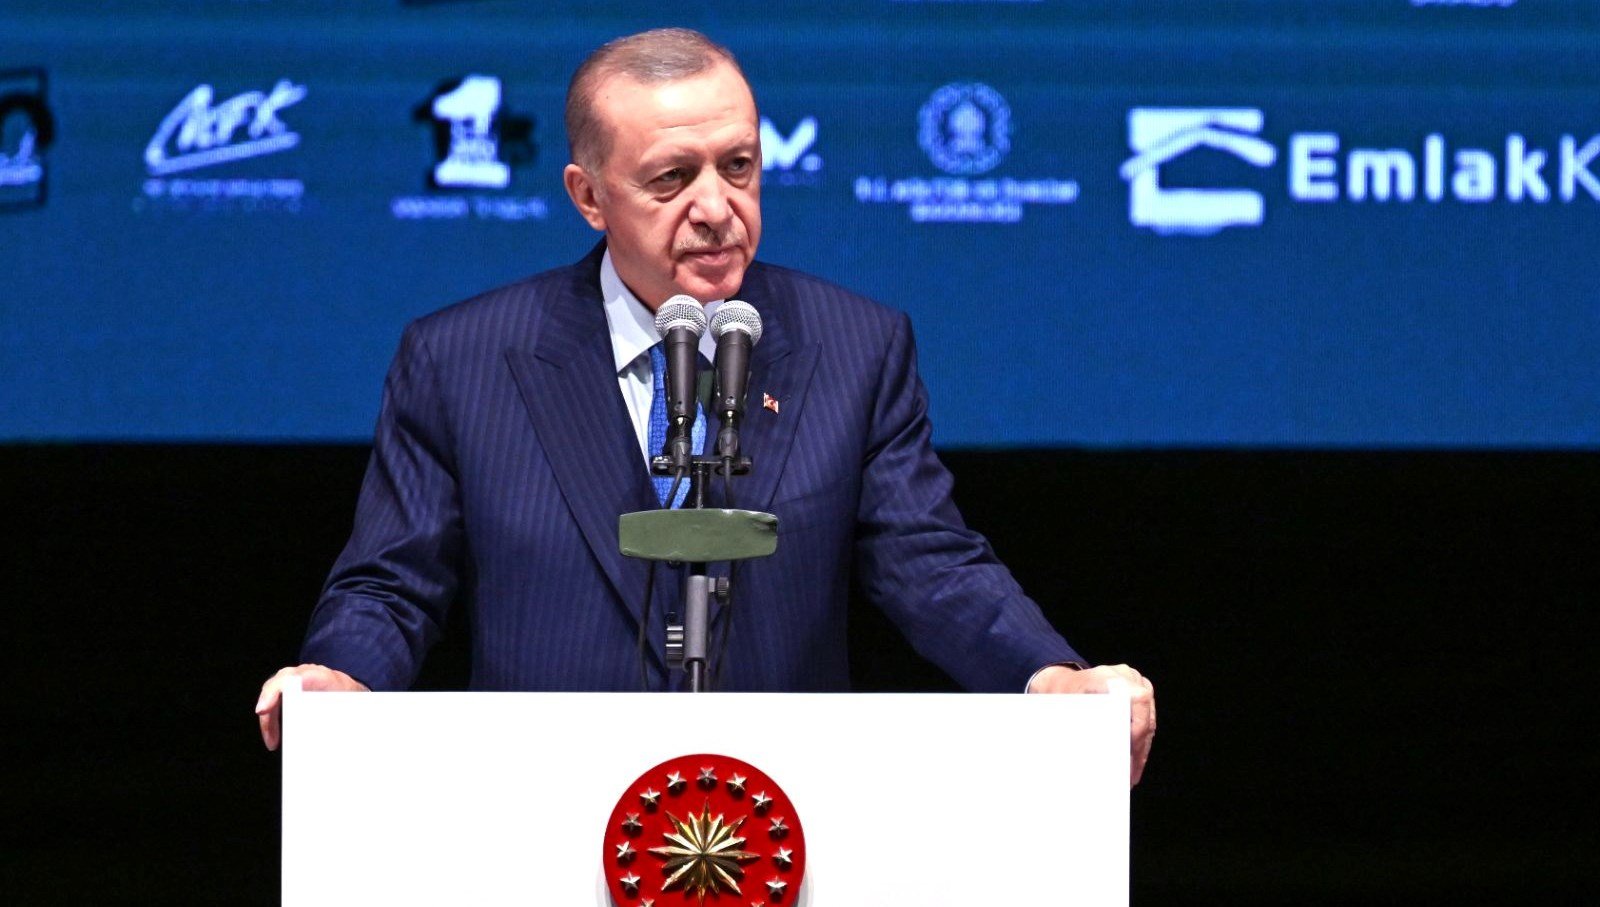 SON DAKİKA HABERİ: Cumhurbaşkanı Erdoğan’dan Kılıçdaroğlu’na “kırsal kesim” tepkisi